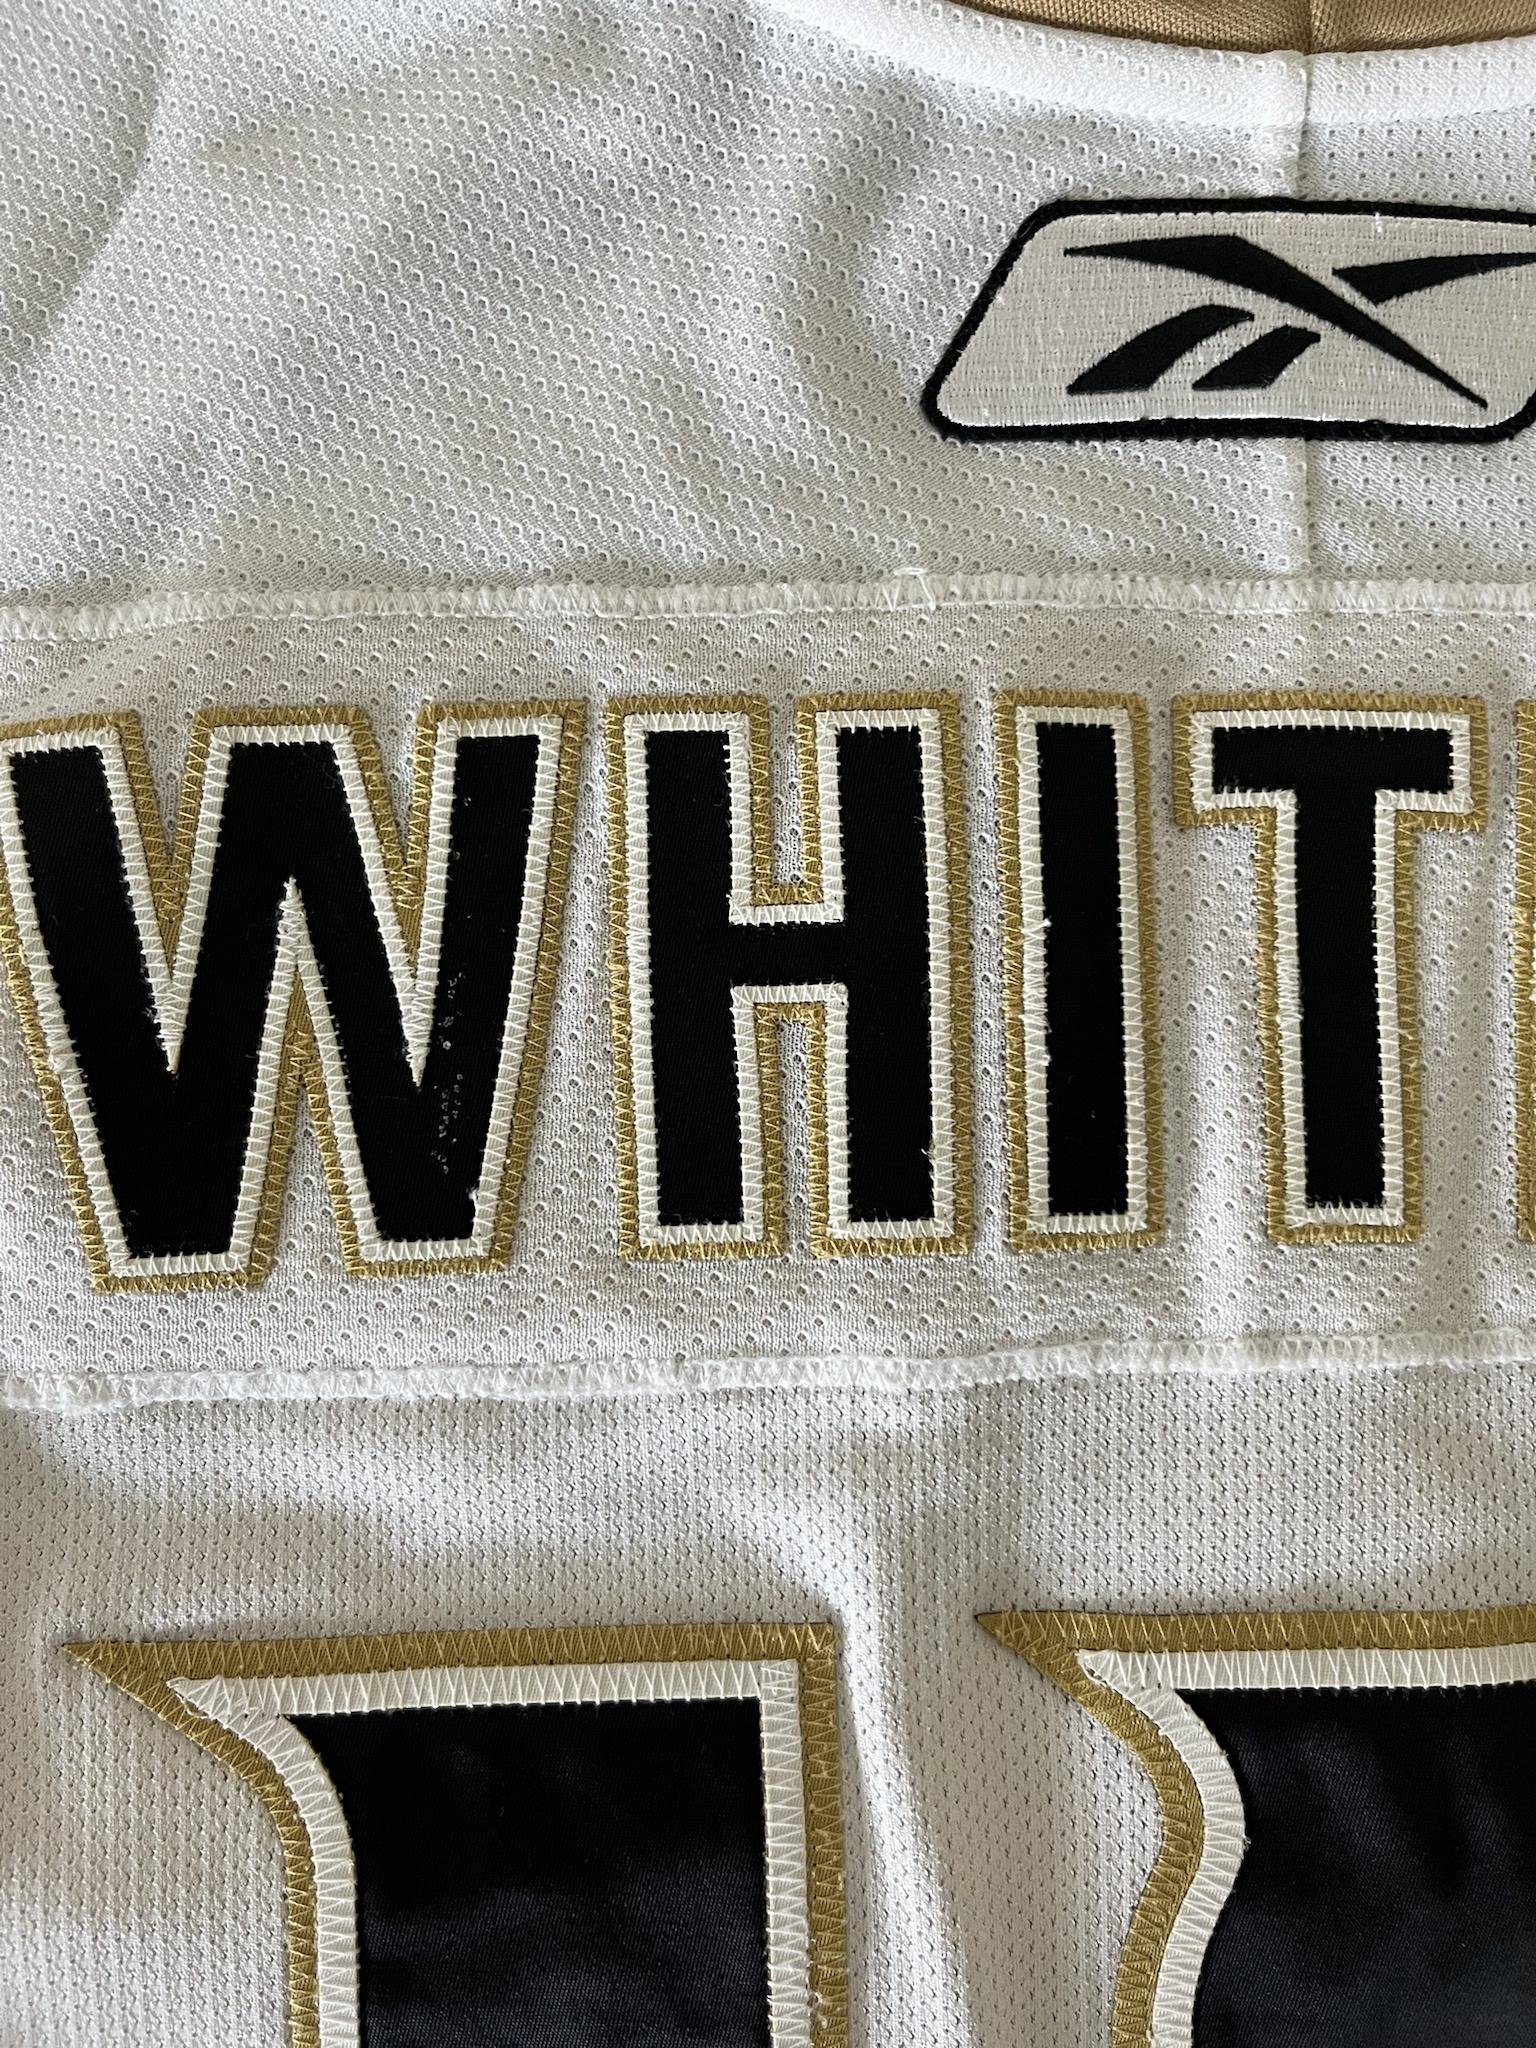 Ryan Whitney 2009-2010 Anaheim Ducks White Set 1 Game Worn Jersey